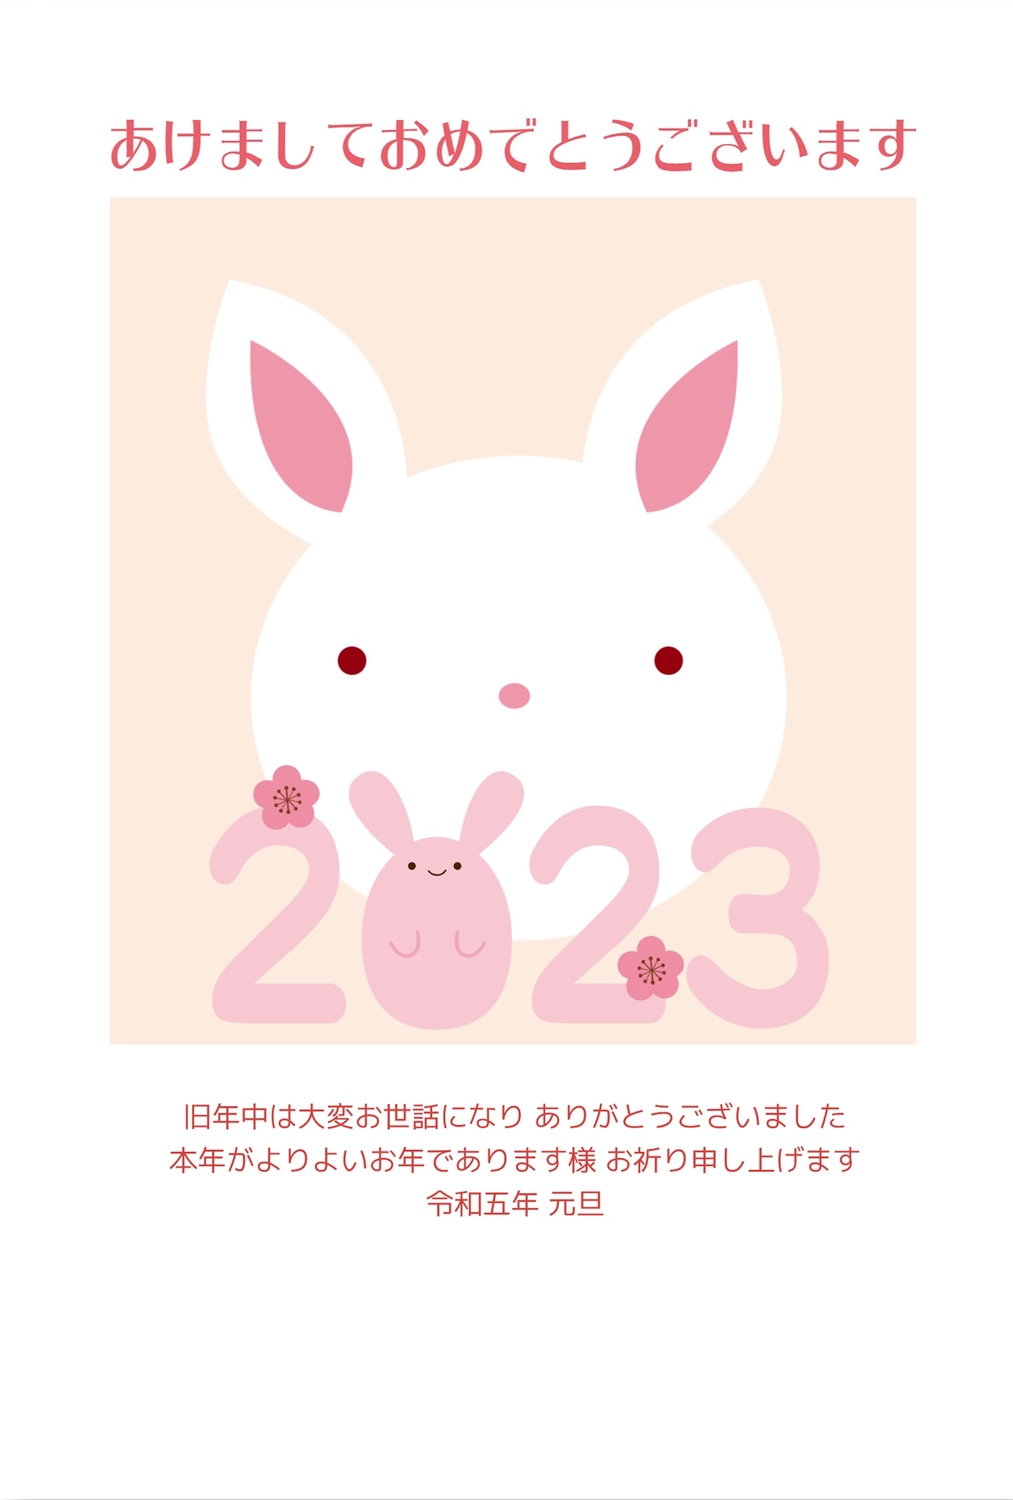 白うさぎアップの年賀状, NEW YEAR, concord, White rabbit, New Year Card template